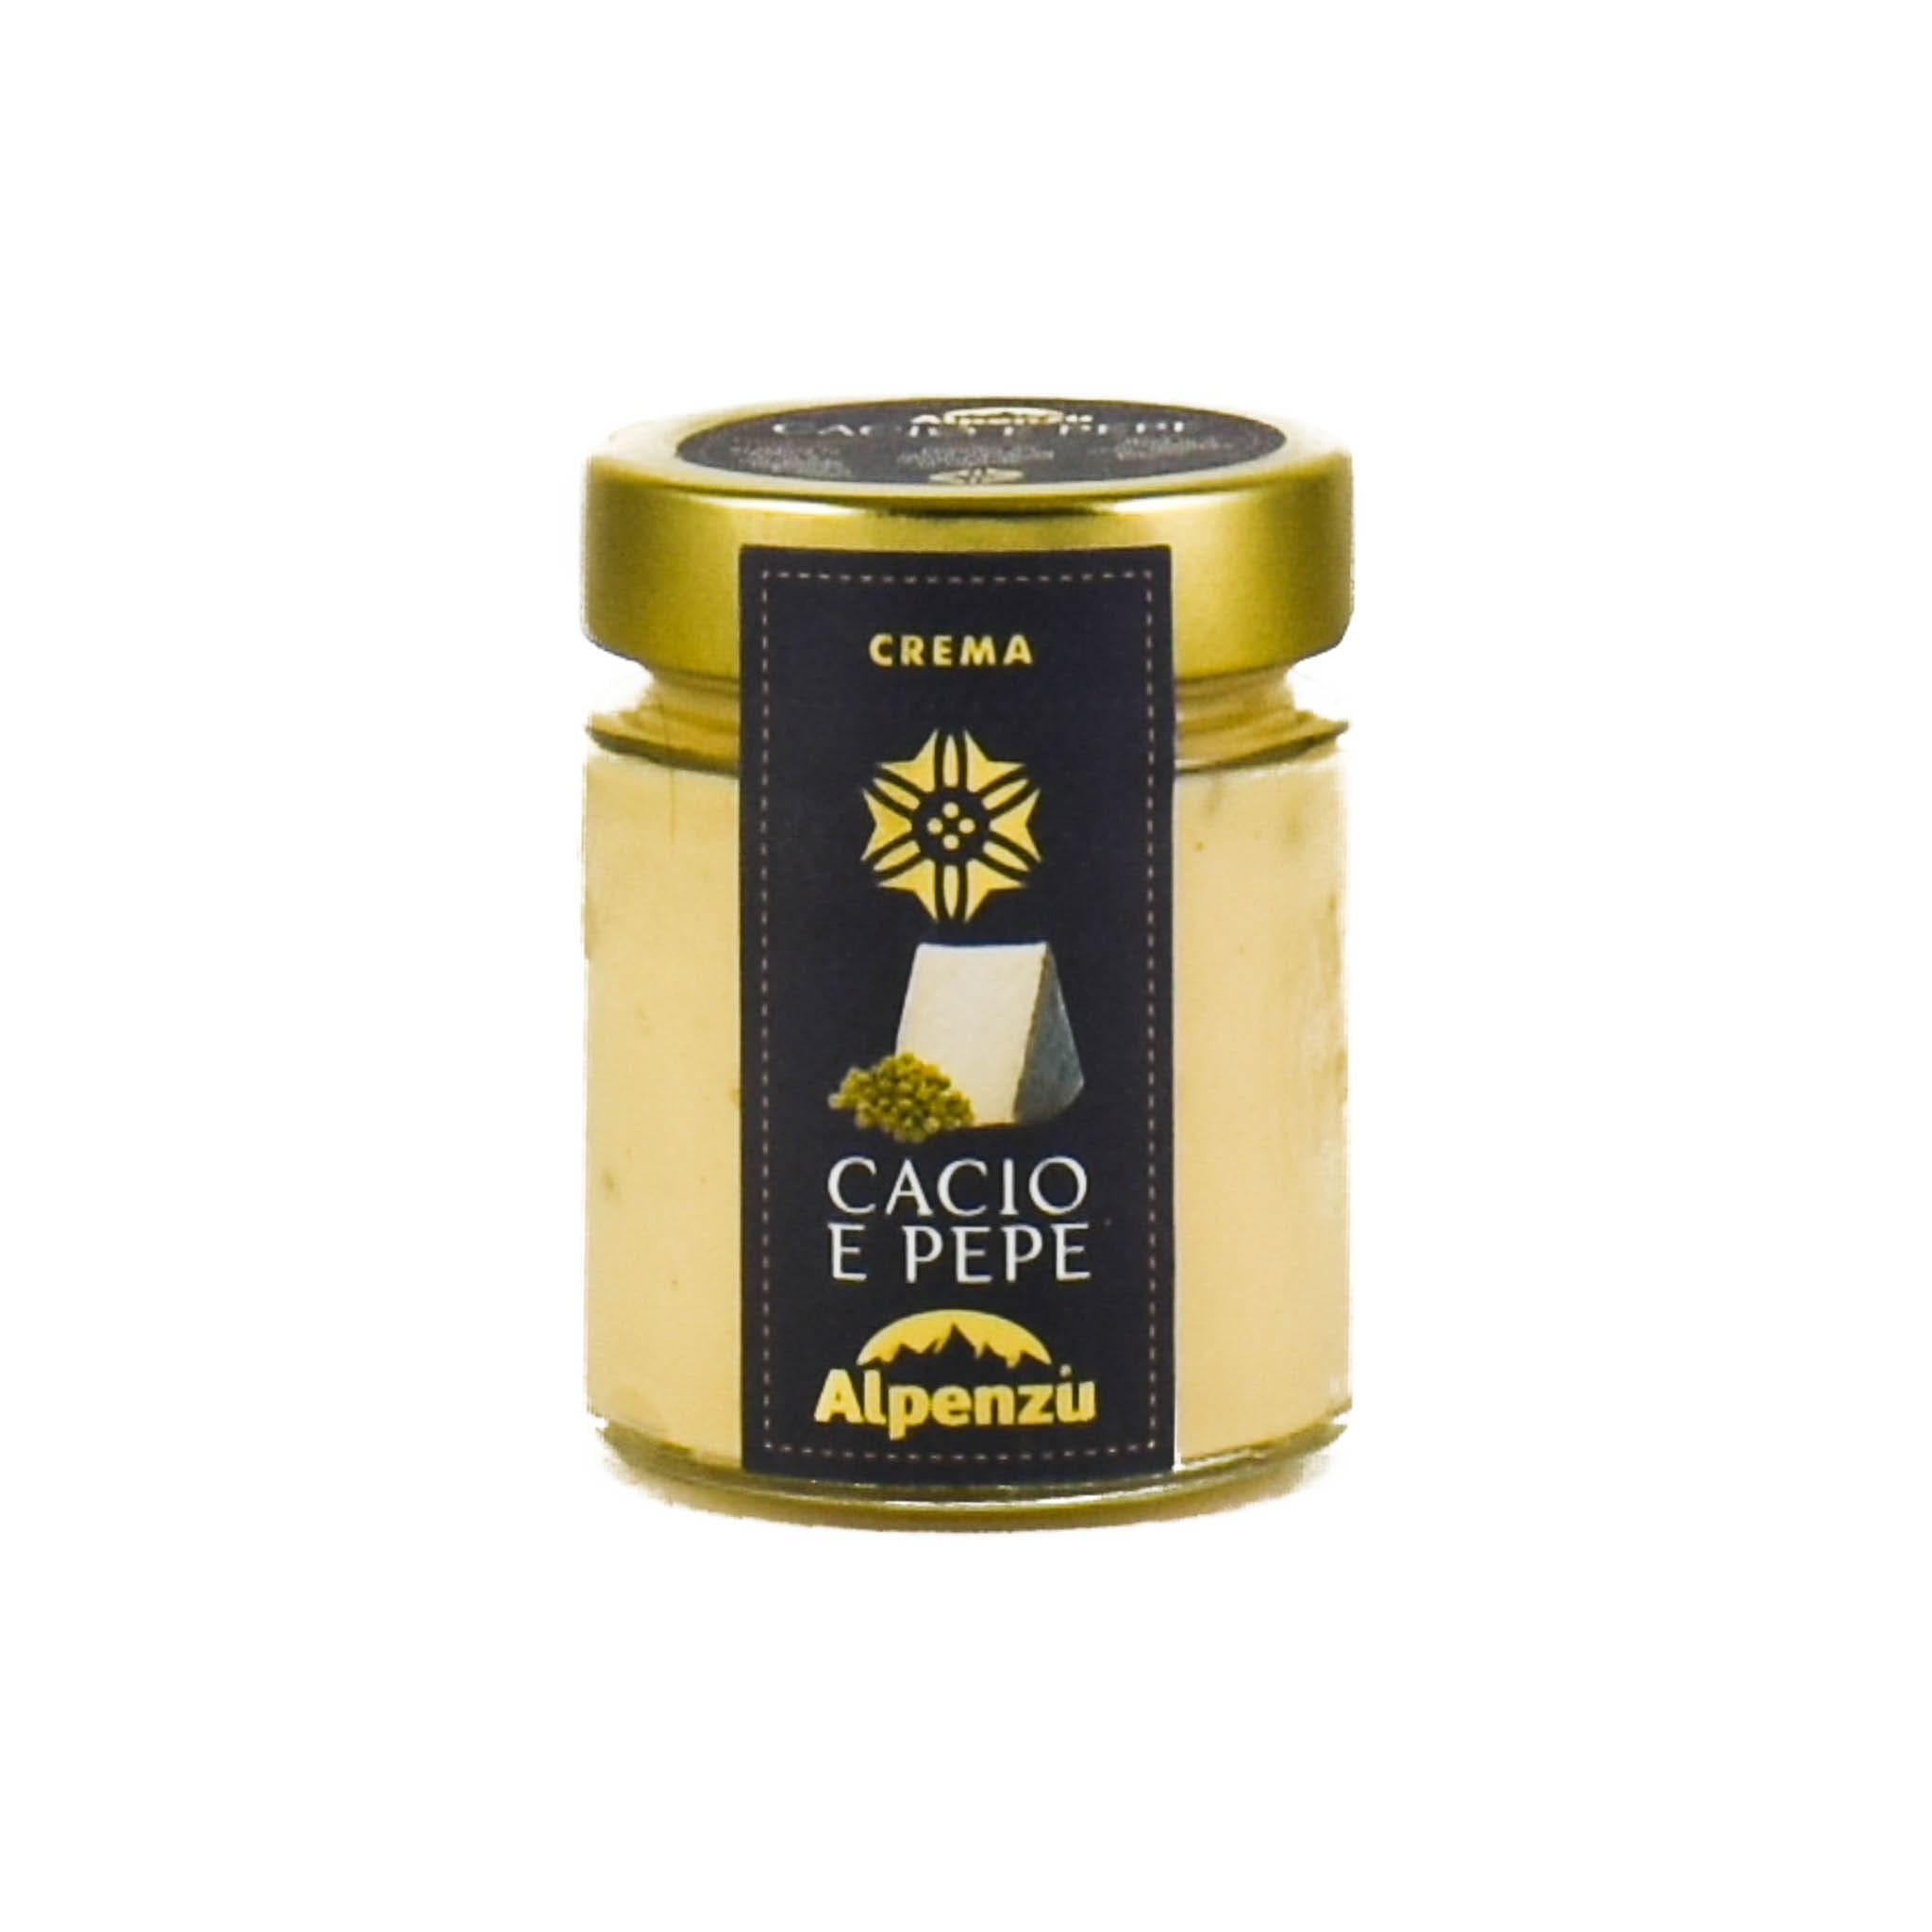 Alpenzu Cacio e Pepe Cream 140g